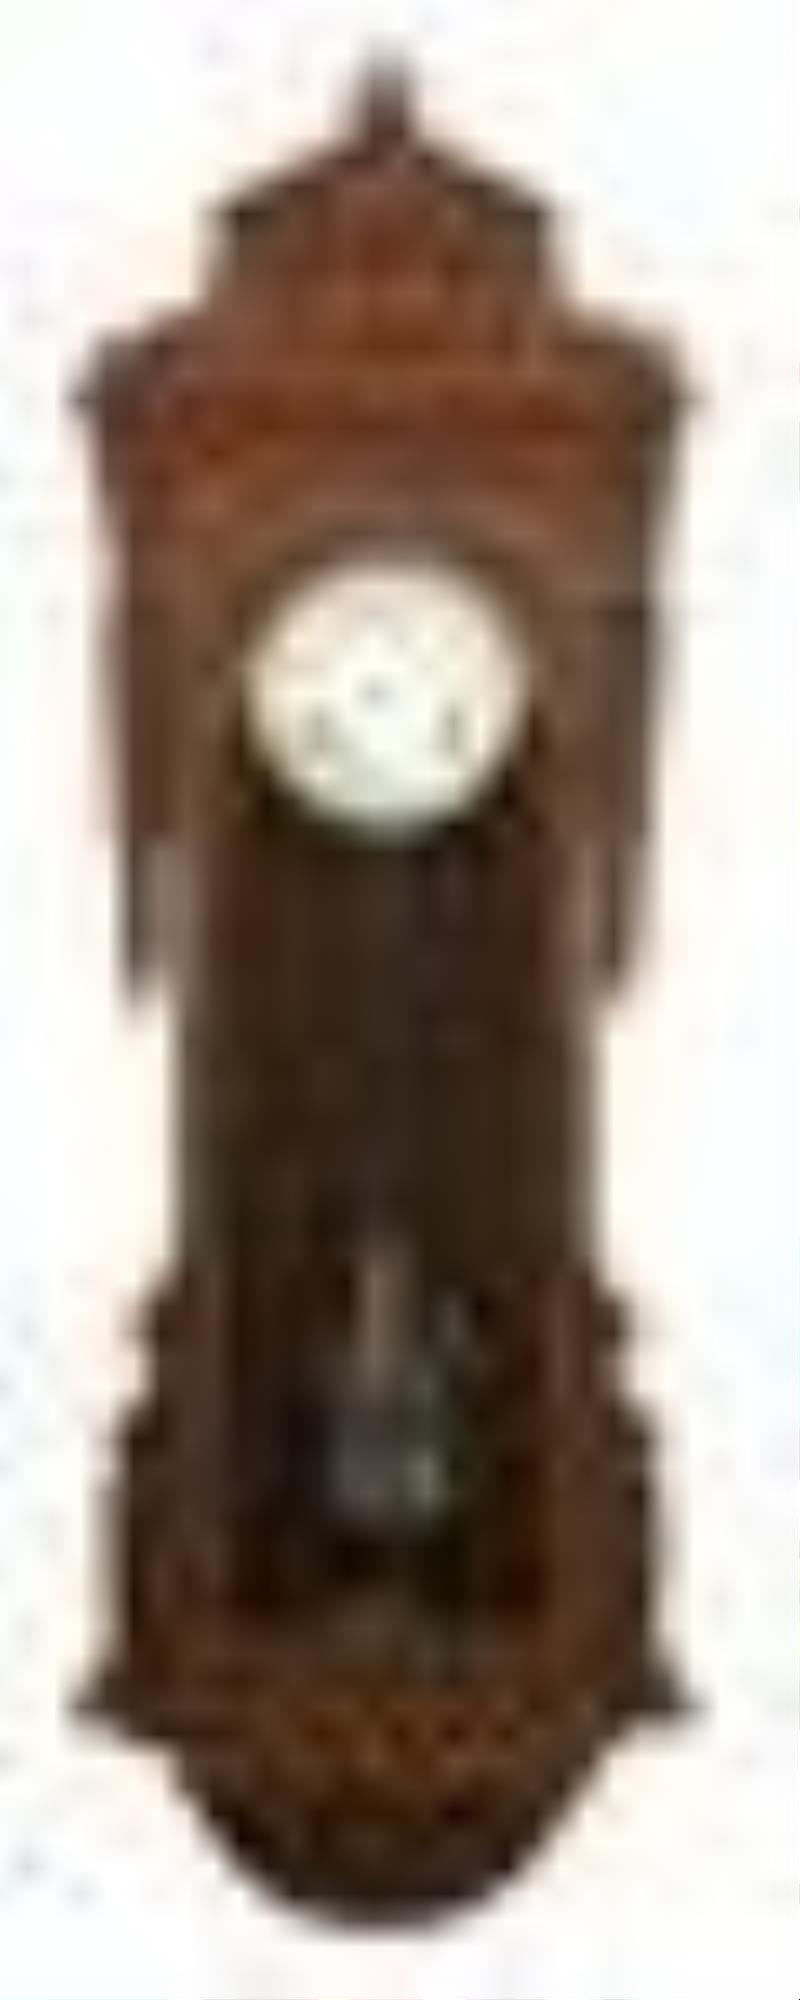 New Haven Clock Co. "Regulator No. 9" Wall Clock